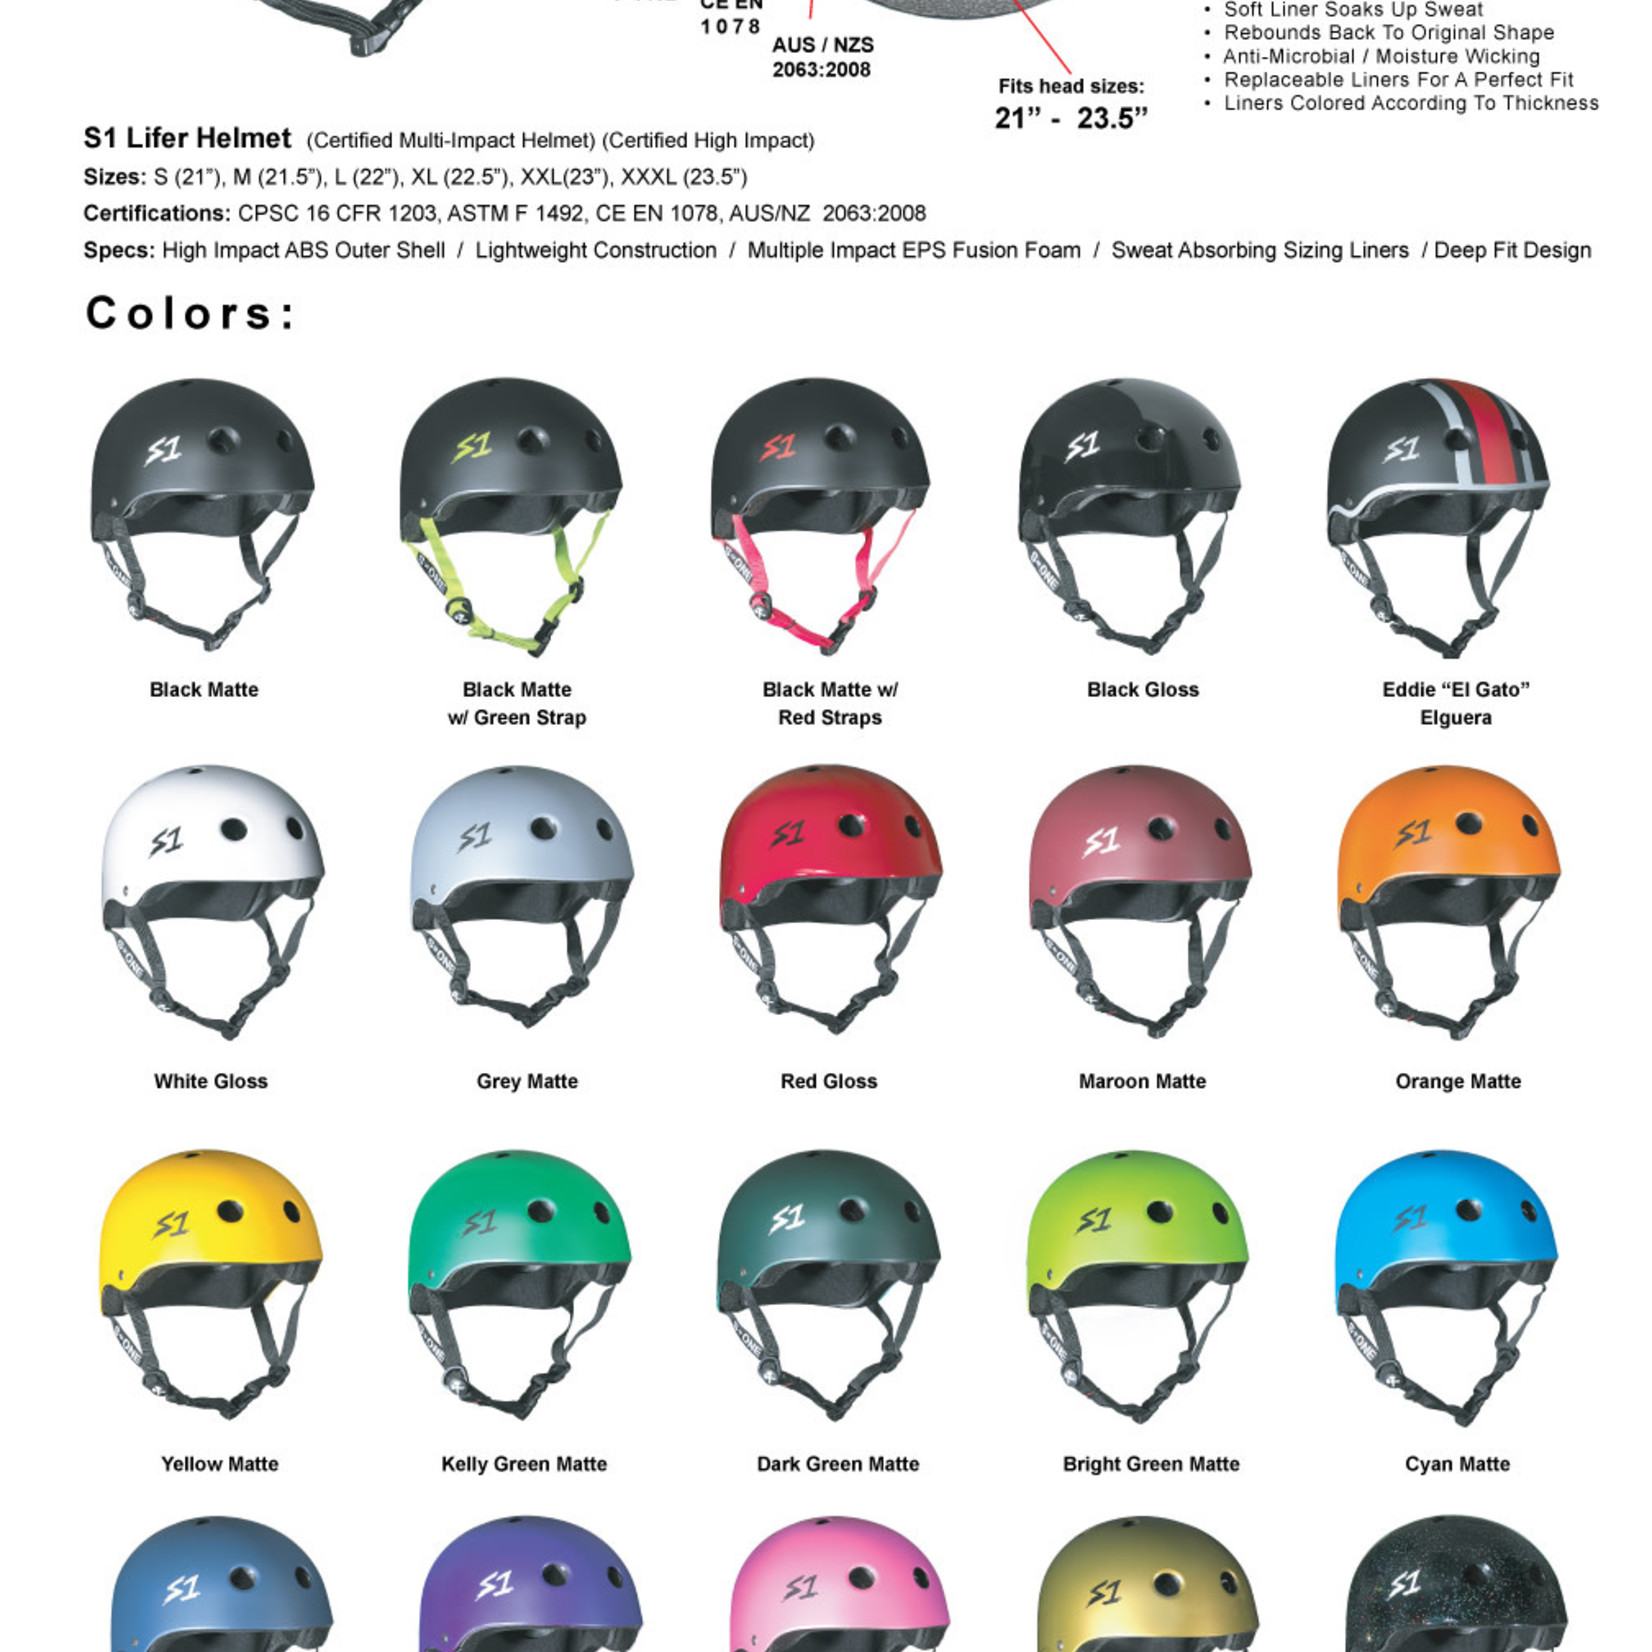 S-One Helmets S-One Helmet Lifer - Black Matte